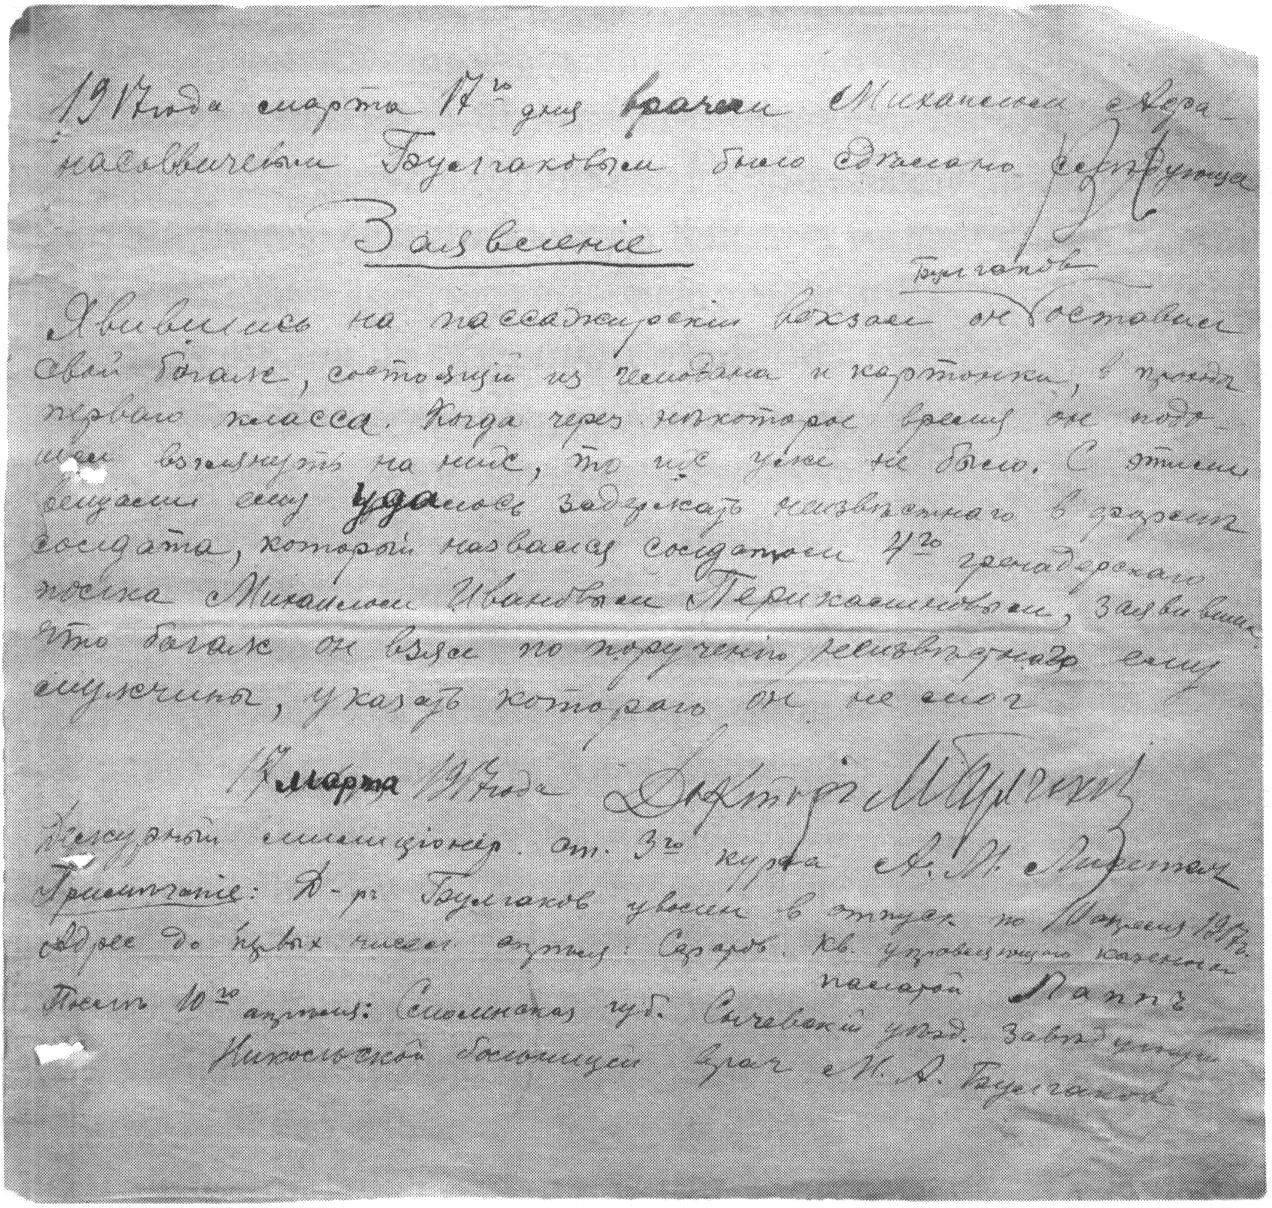 Заявление о пропаже вещей Булгакова на железнодорожном вокзале Саратова 17 марта 1917 года. Из фондов Государственного архива Саратовской области